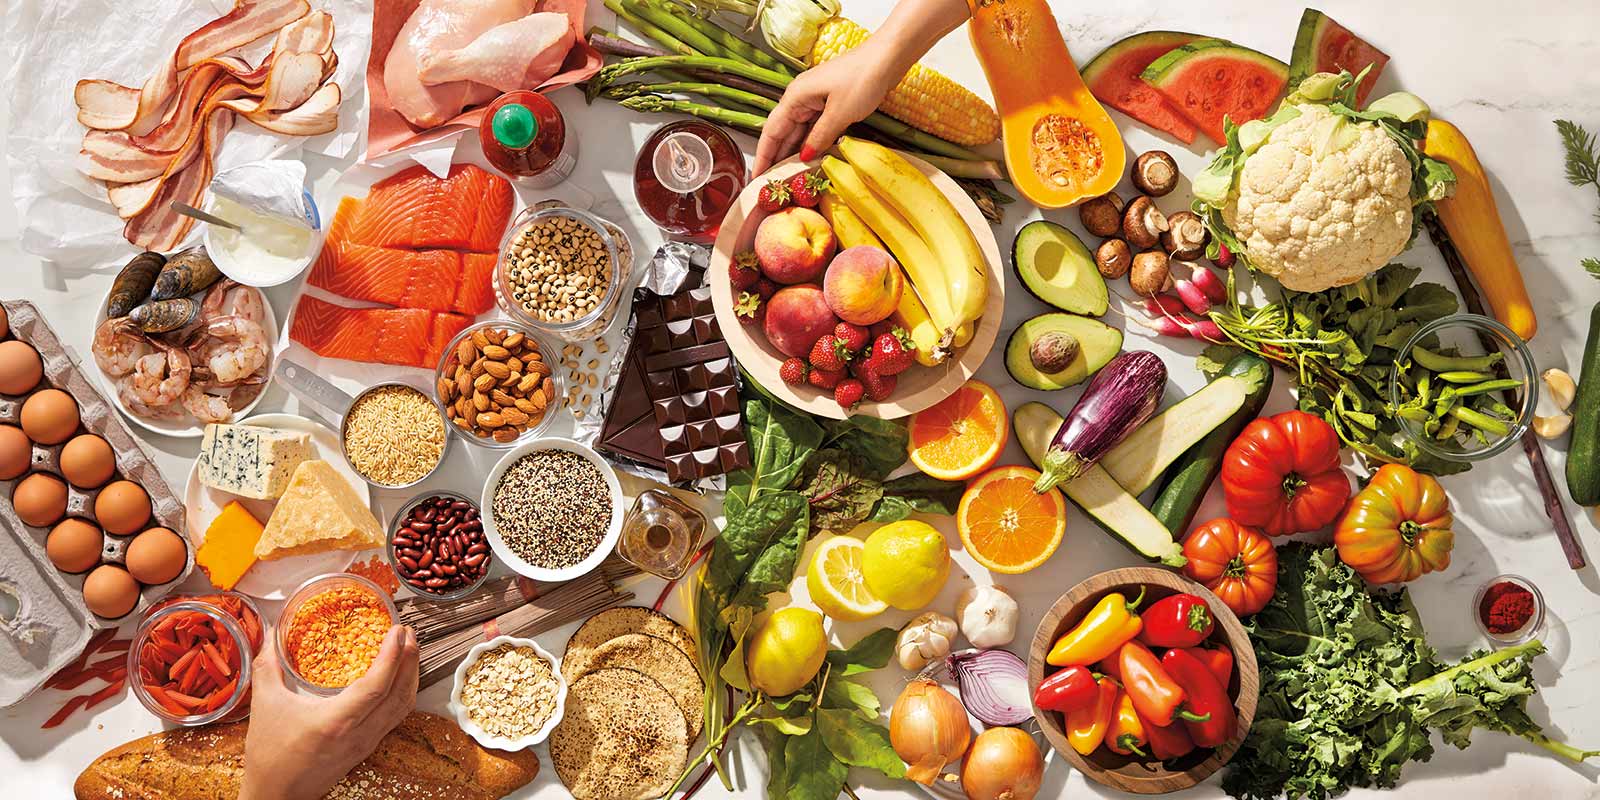 Ein Tisch ist gedeckt mit vielen ZeroPoint Lebensmitteln wie frischem Obst, Gemüse, Fisch, Eiern etc.